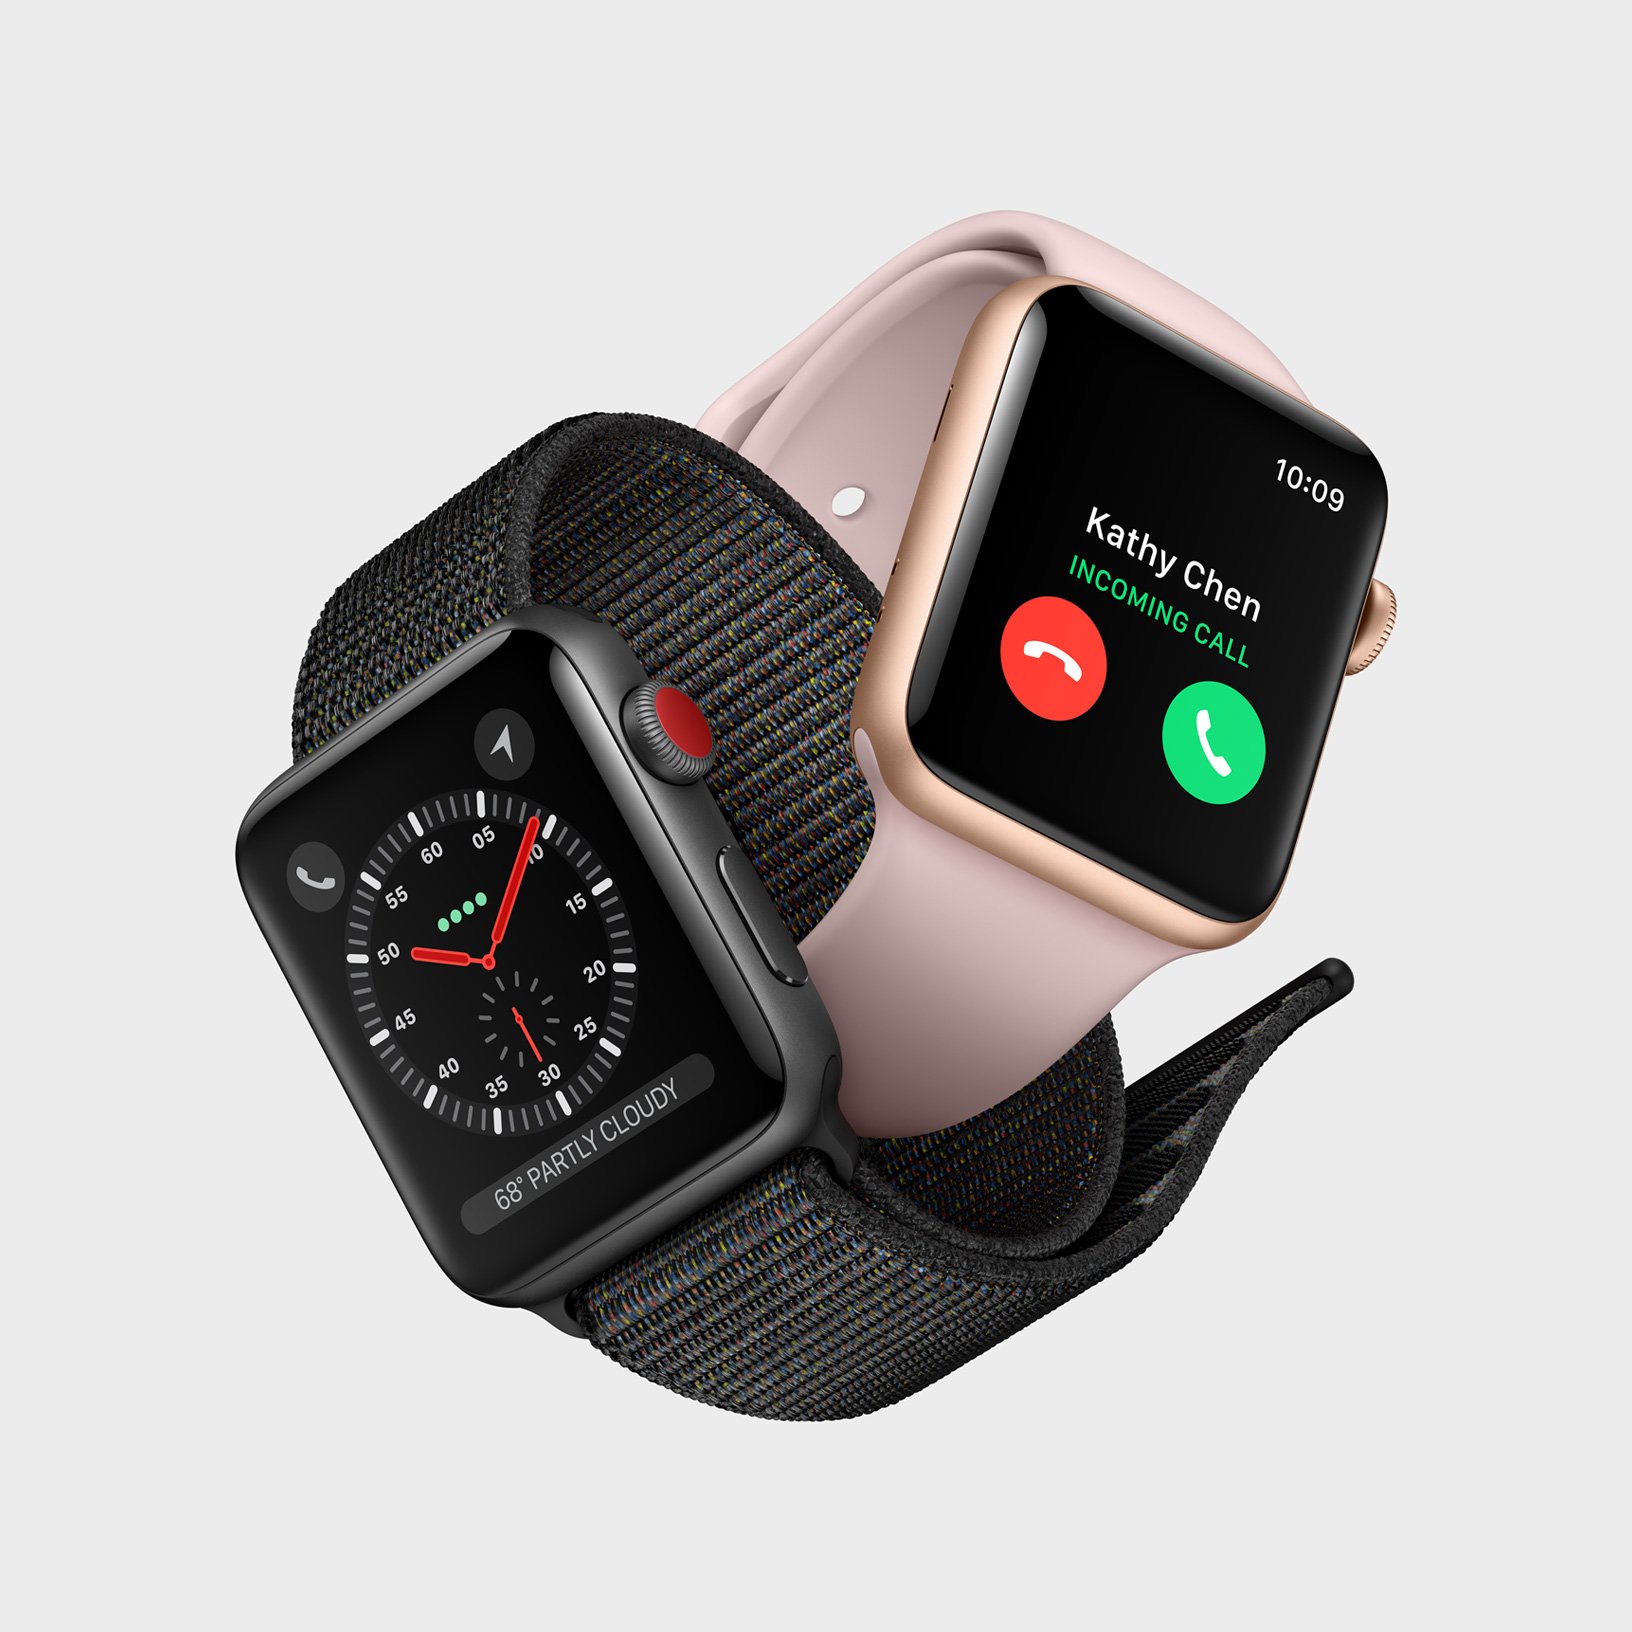 Apple признала наличие проблем с LTE в своих новых часах Apple Watch